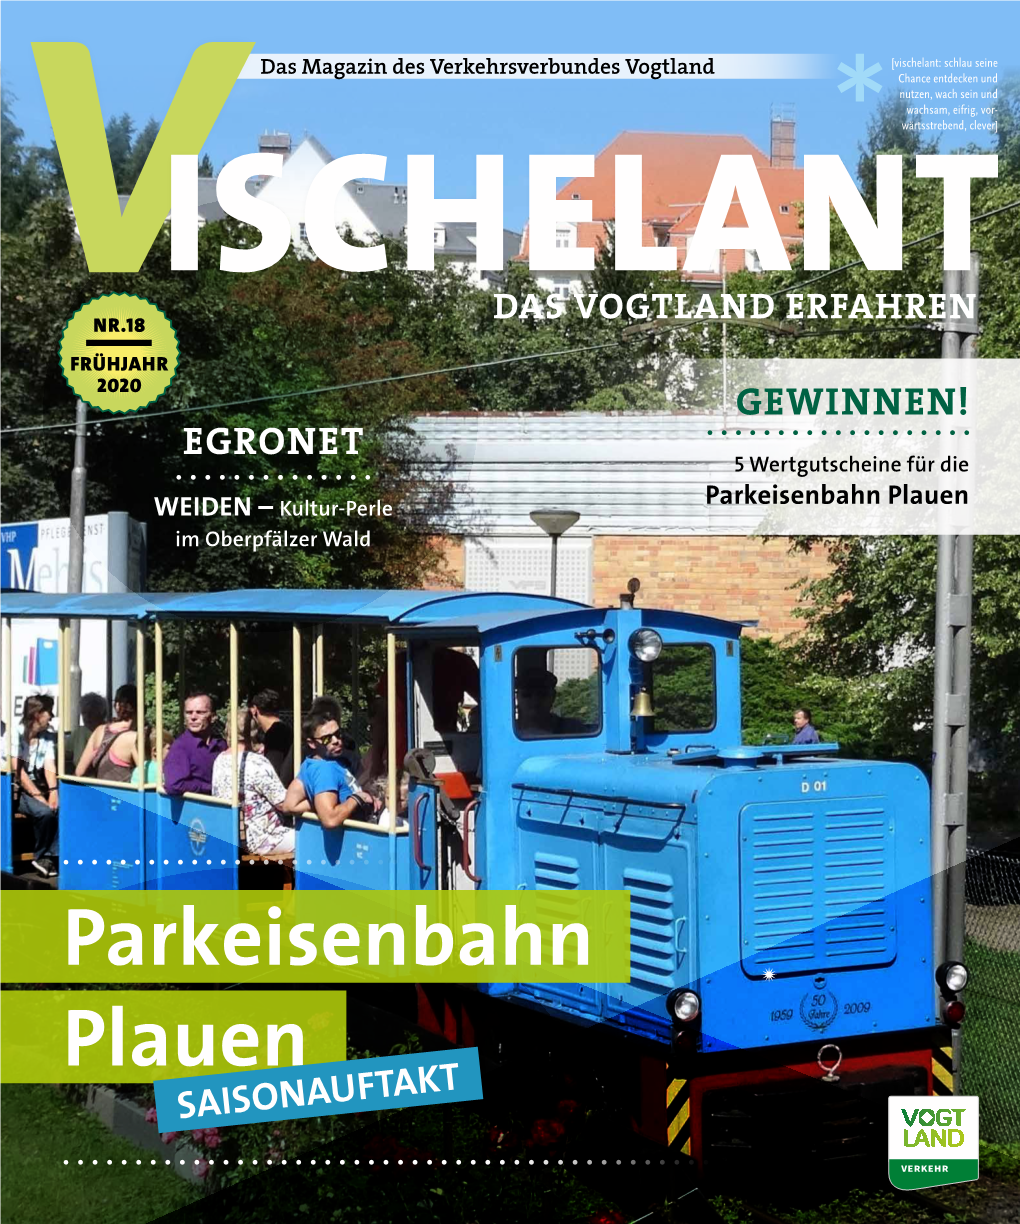 Parkeisenbahn Plauen WEIDEN – Kultur-Perle Im Oberpfälzer Wald